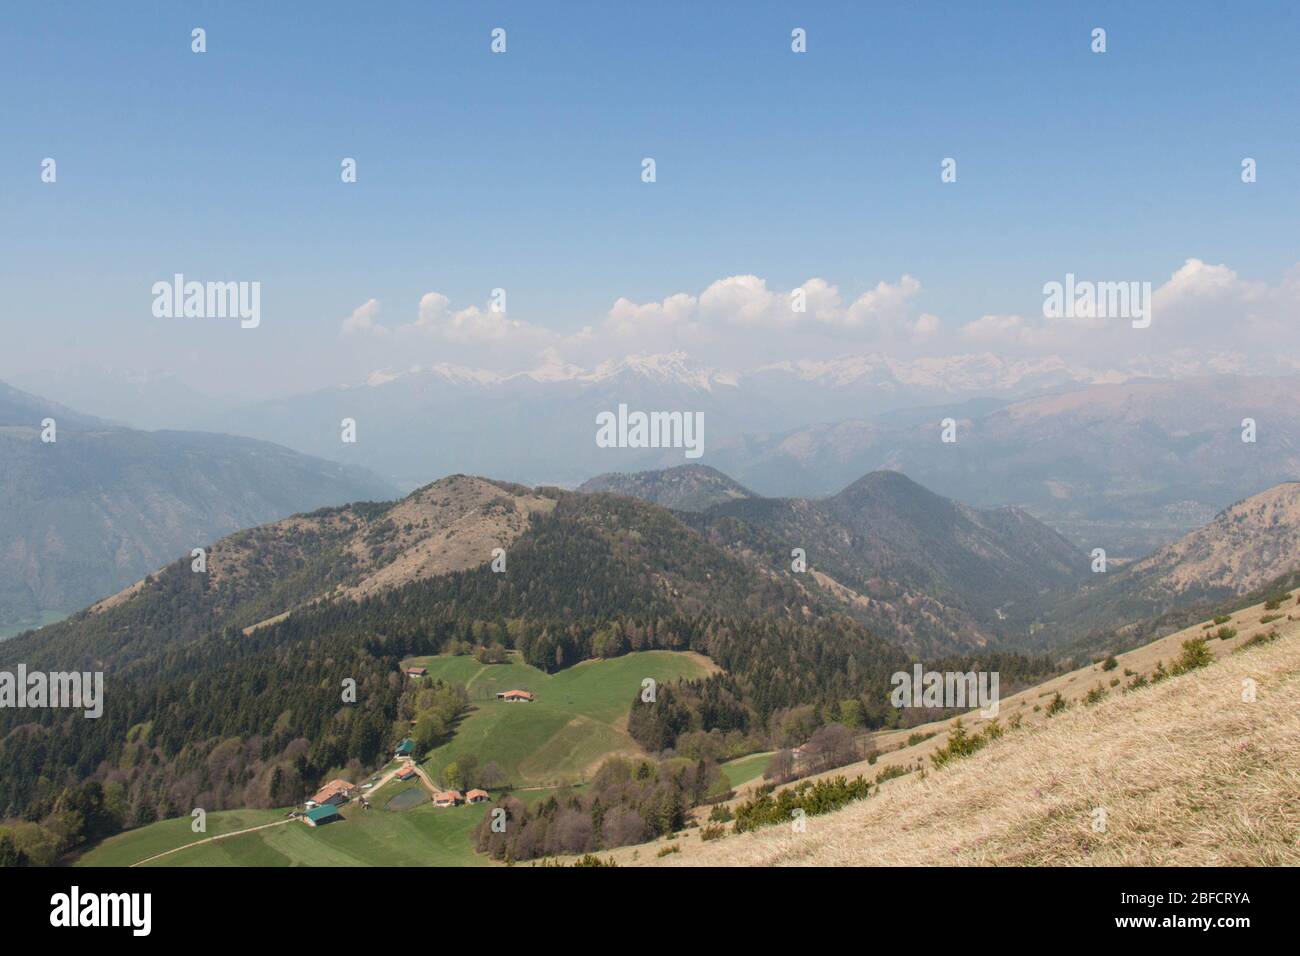 La vista del contryside rurale in montagna. Campi agricoli su colline con montagne sullo sfondo. Foto Stock